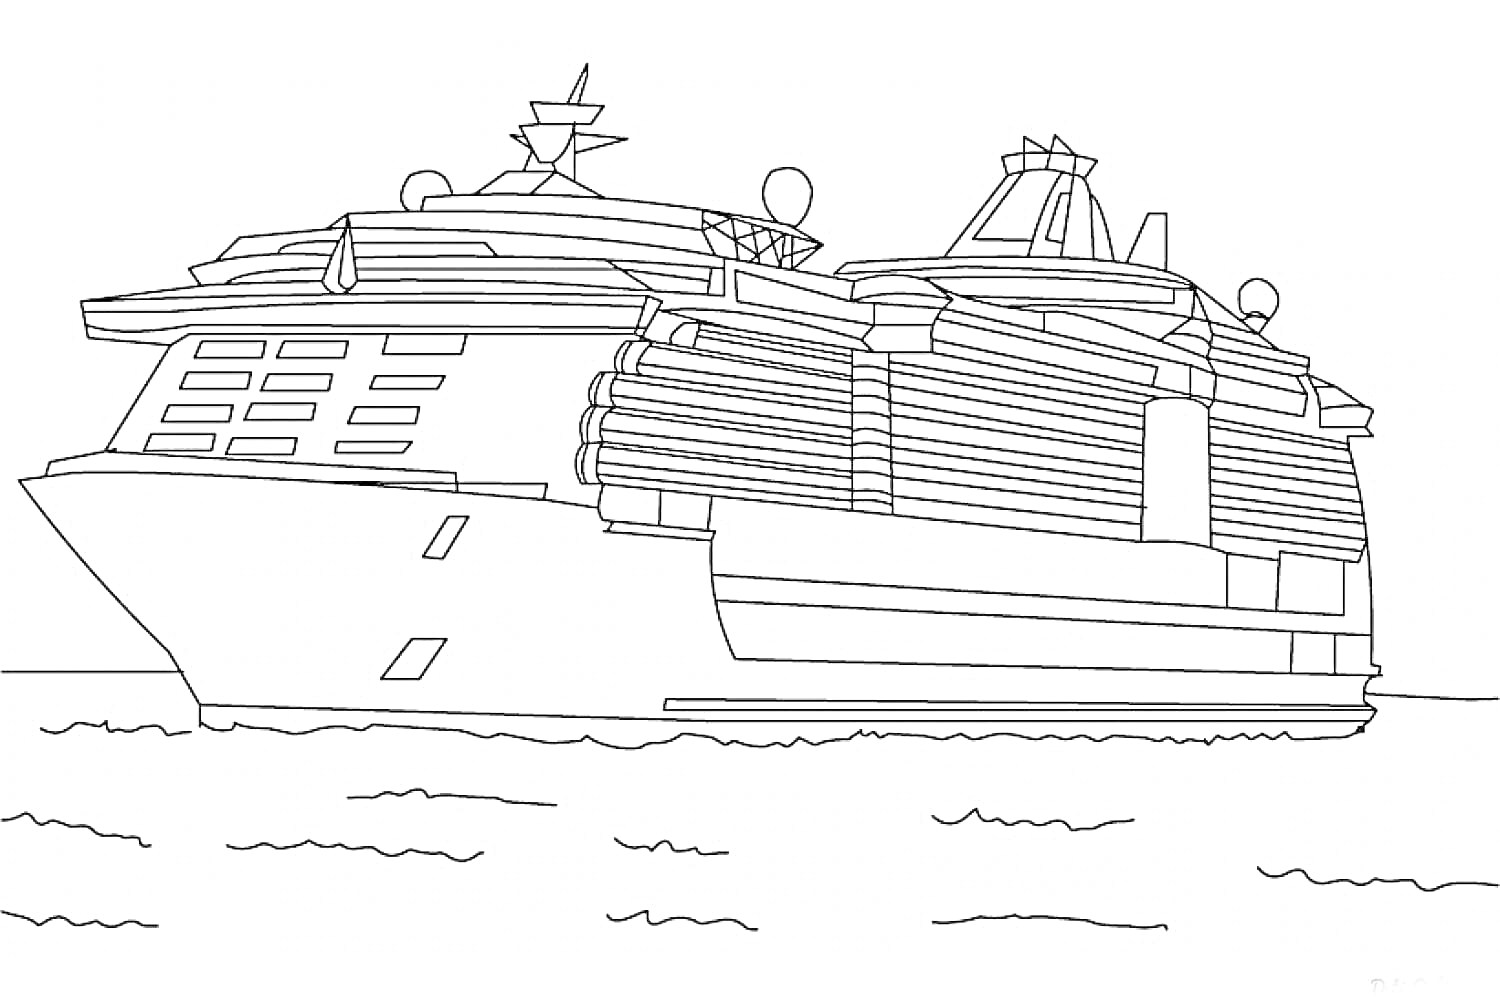 Пассажирский круизный лайнер на море с антеннами и деталями палуб